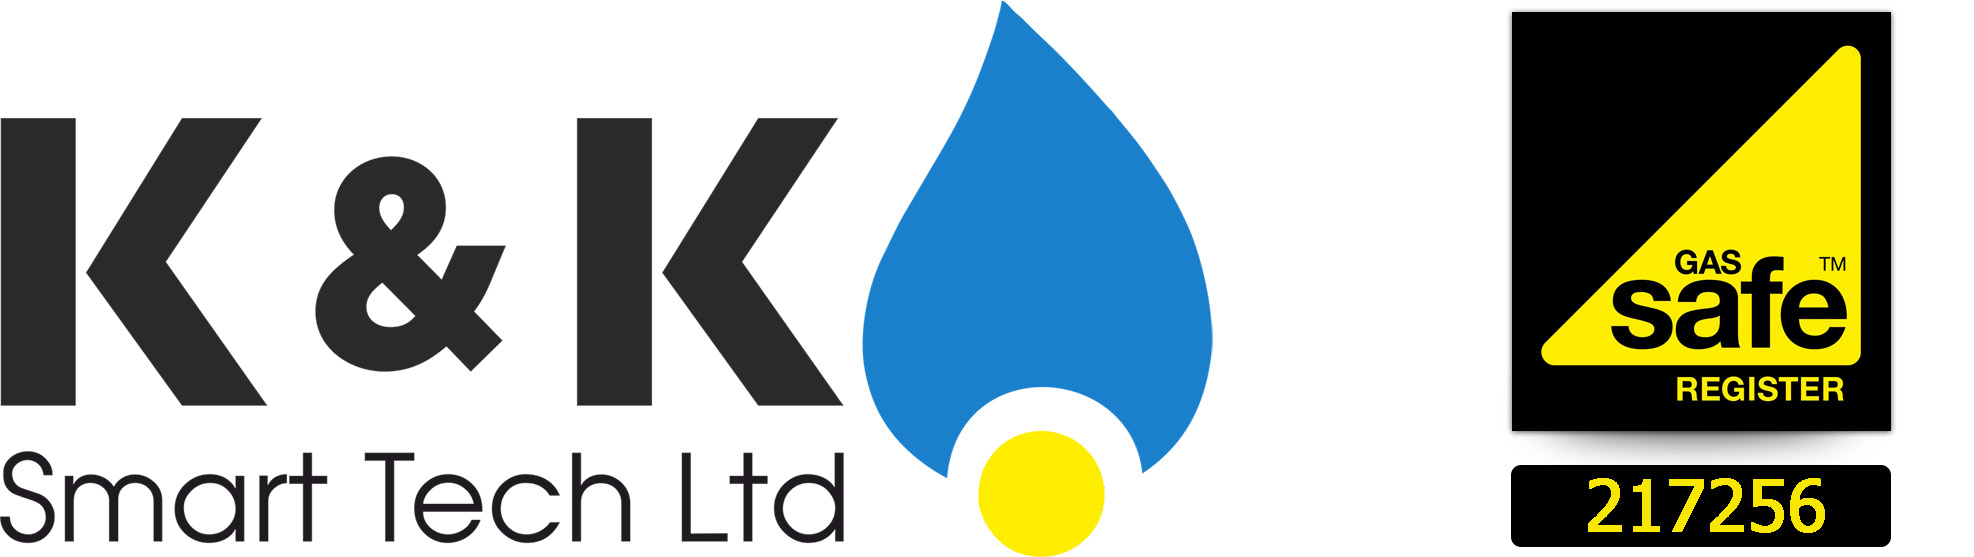 Gas Safe registered Engineer - K&K Smart Tech Ltd.